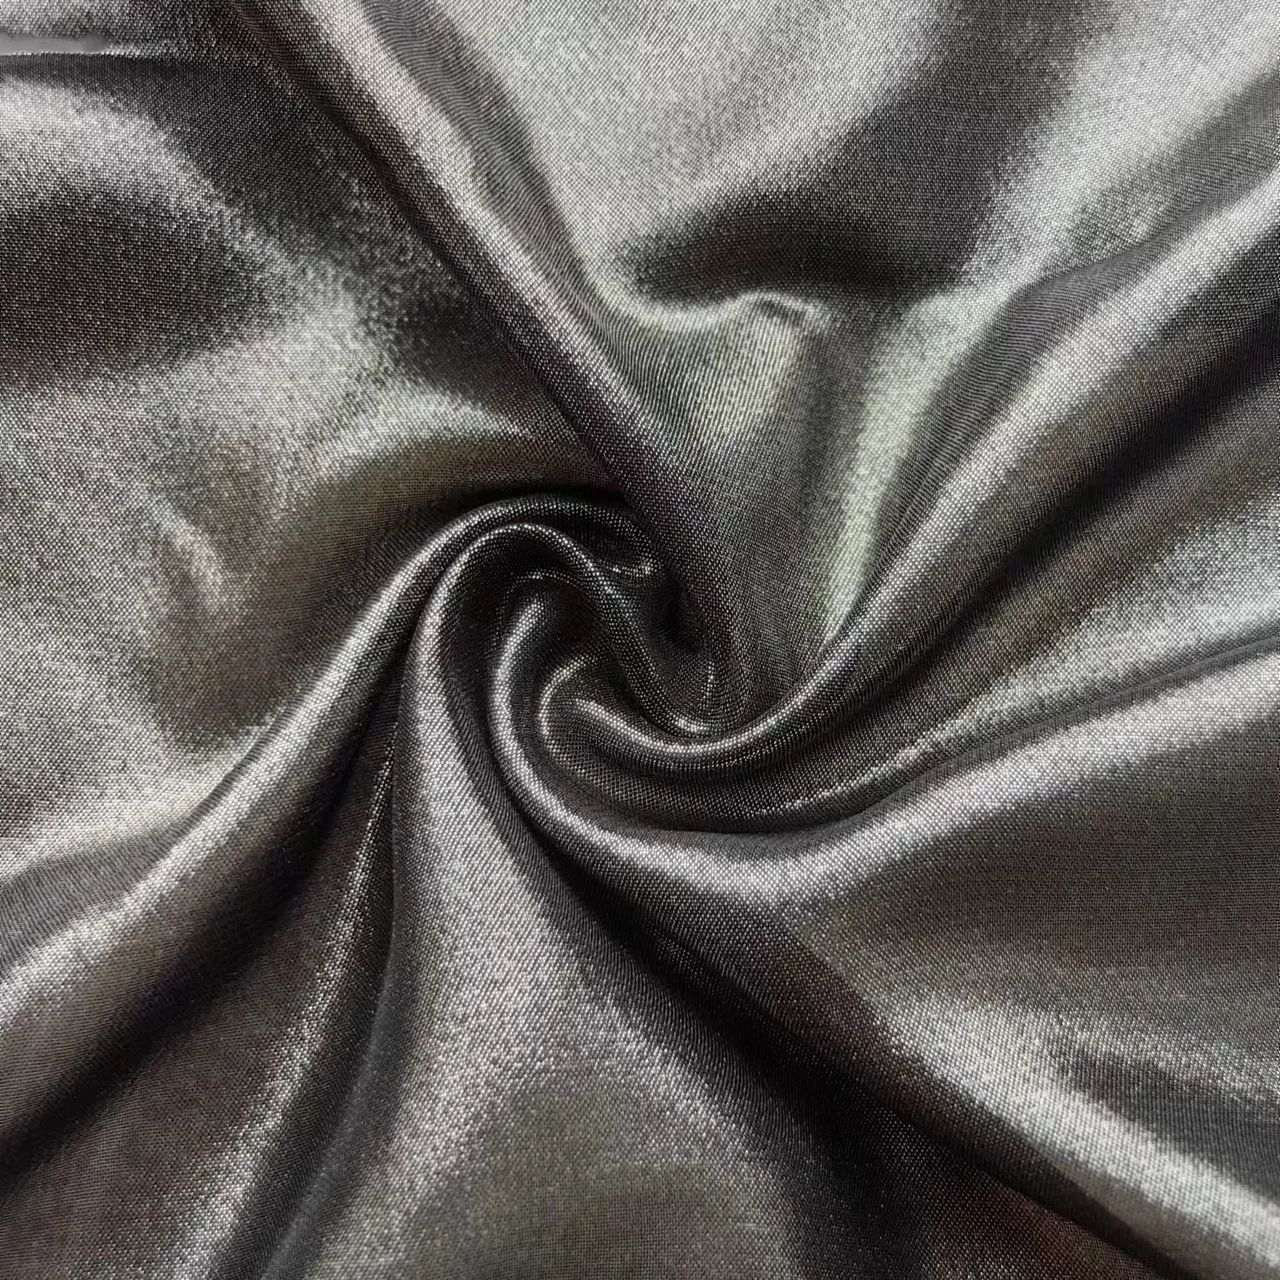 Tissu en mousseline d'argent chaud mousseline de soie de qualité tissu en mousseline de soie métallique nouvelle mode vêtements pour femmes robe échantillons gratuits